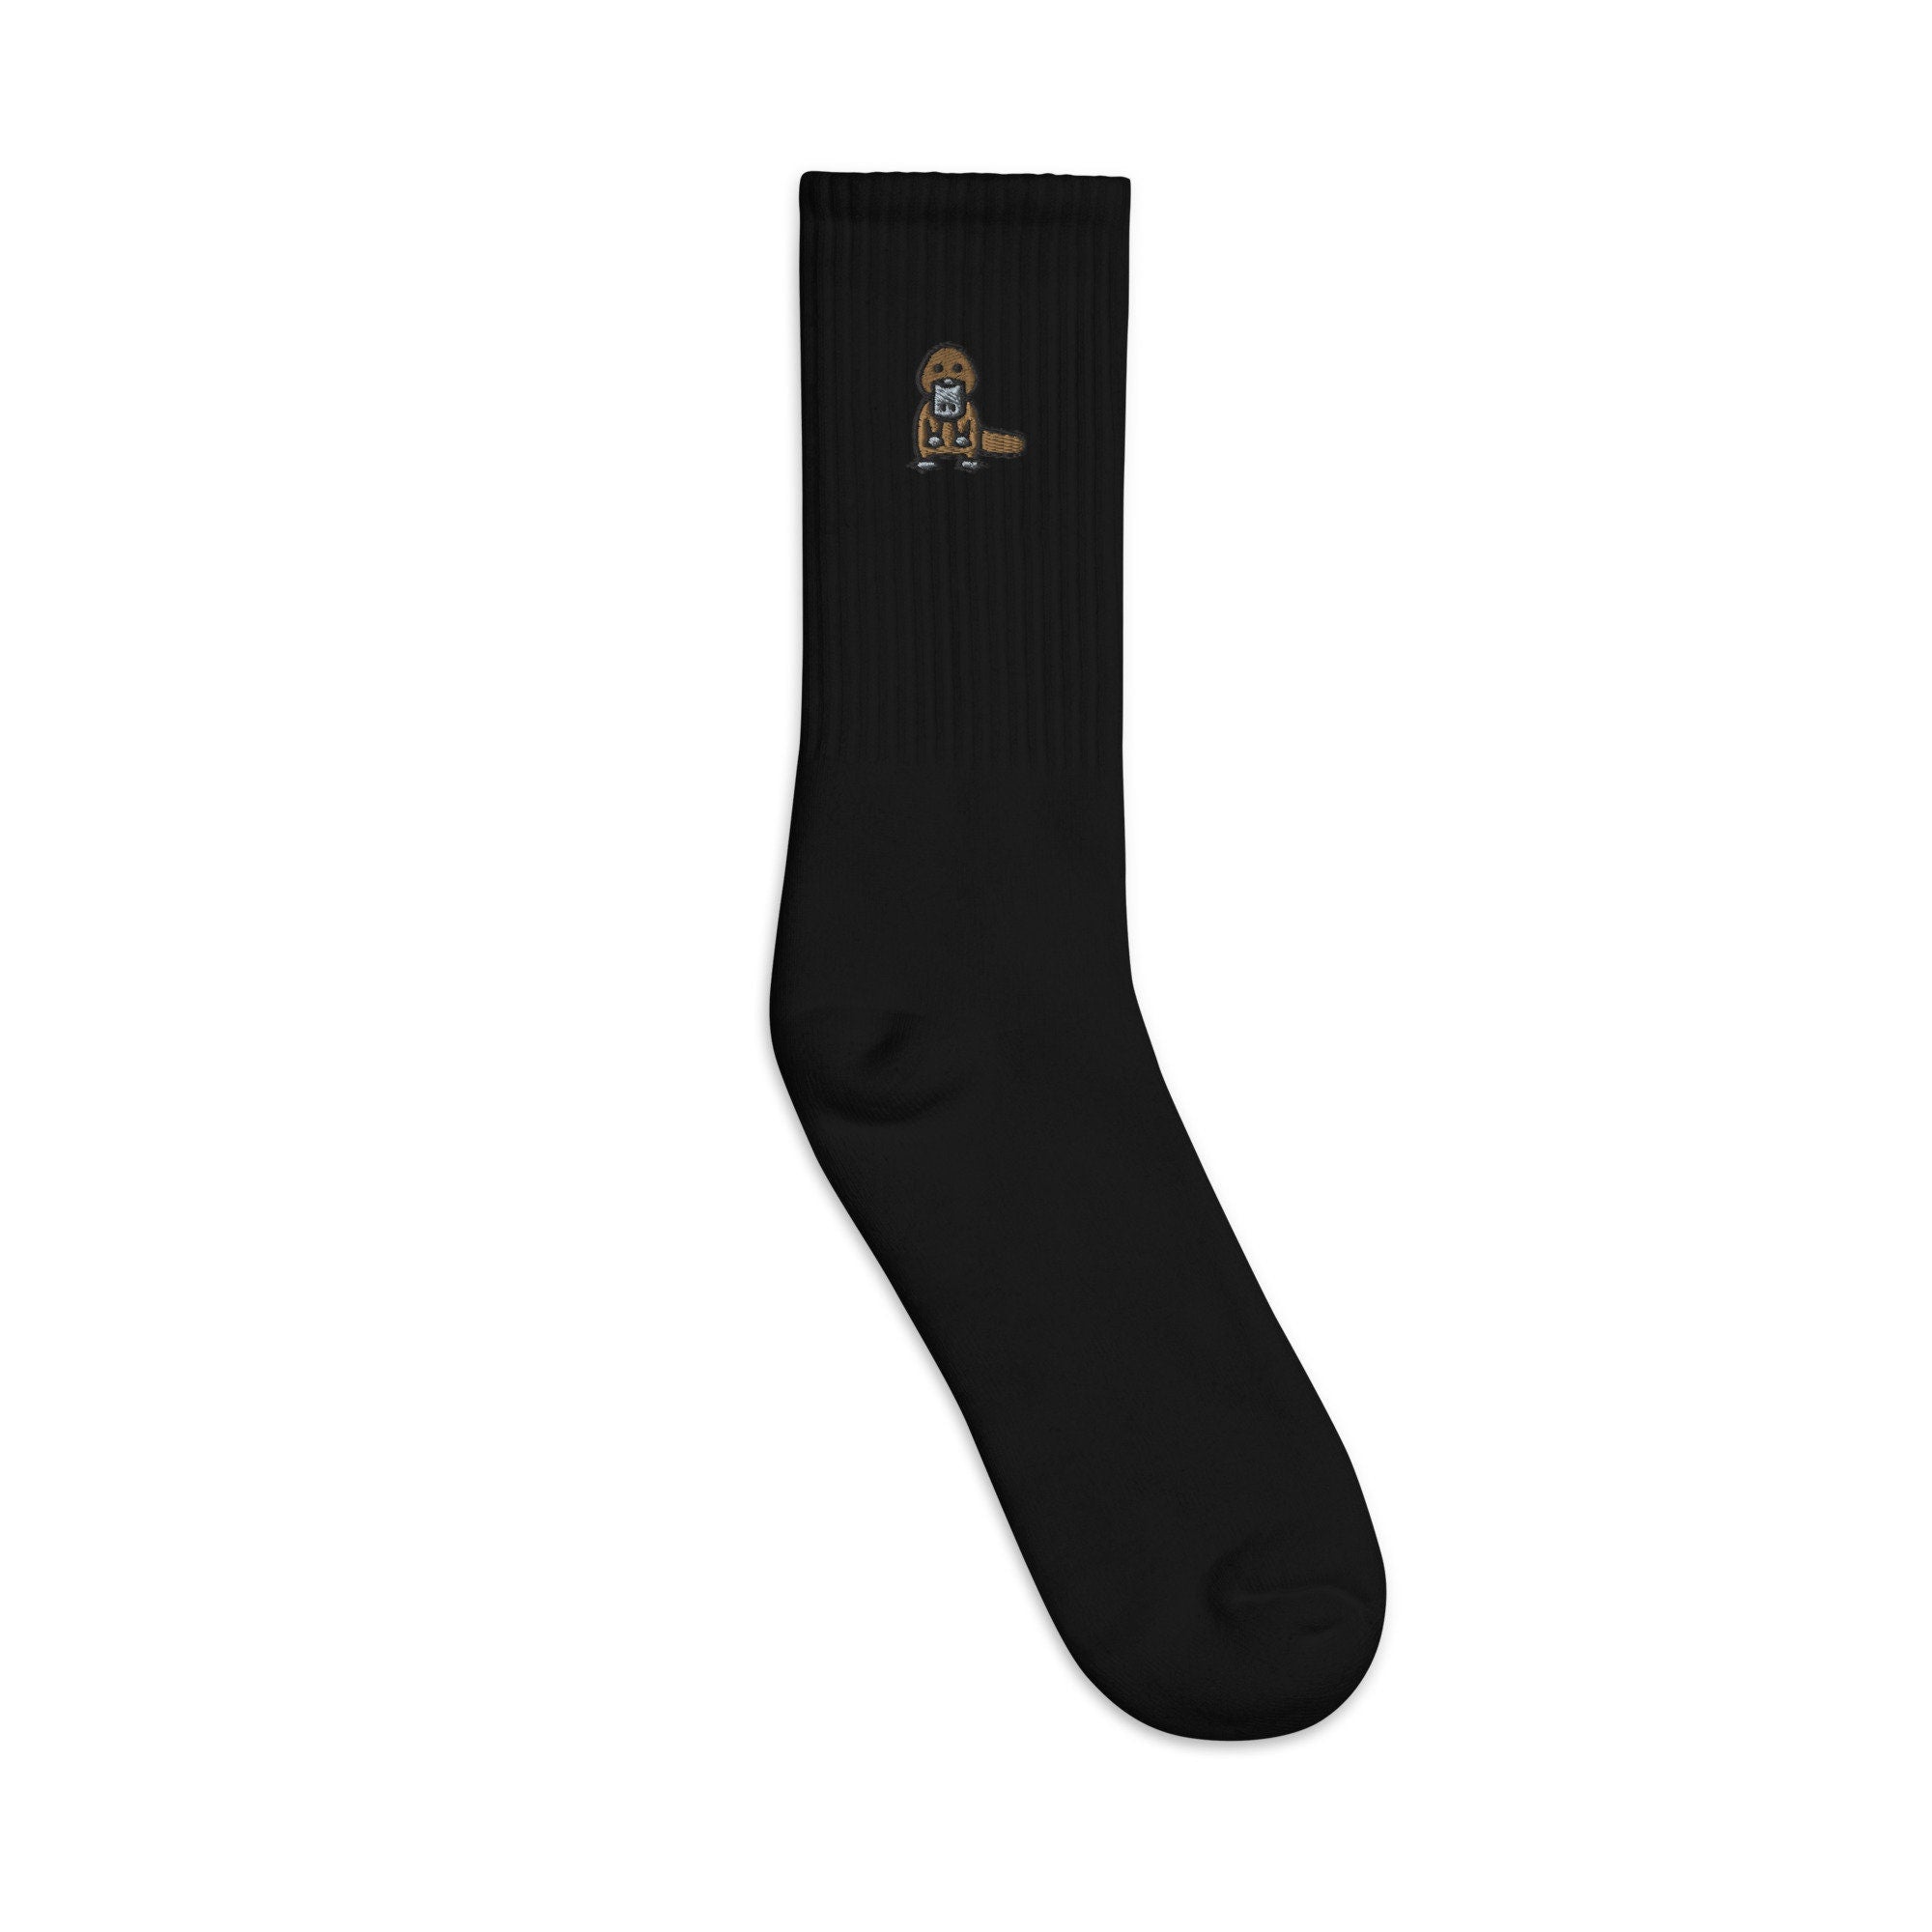 Platypus Embroidered Socks, Premium Embroidered Socks, Long Socks Gift - Multiple Colors